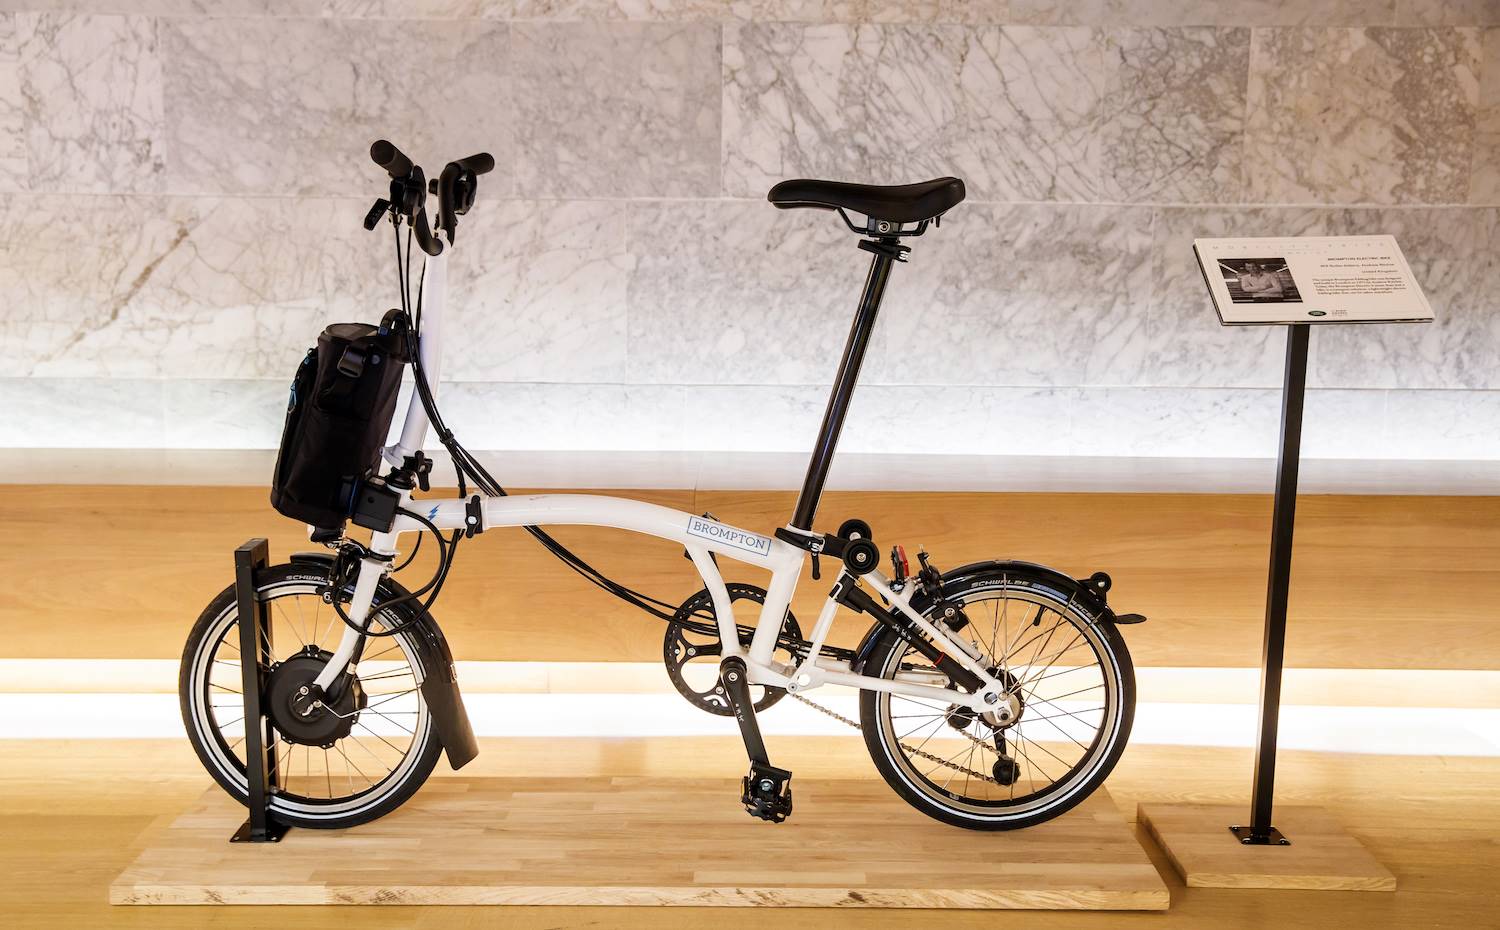 La bicicleta eléctrica diseñada por Will Butler-Adams para la marca Brompton ganó en la categoría de Movilidad.
